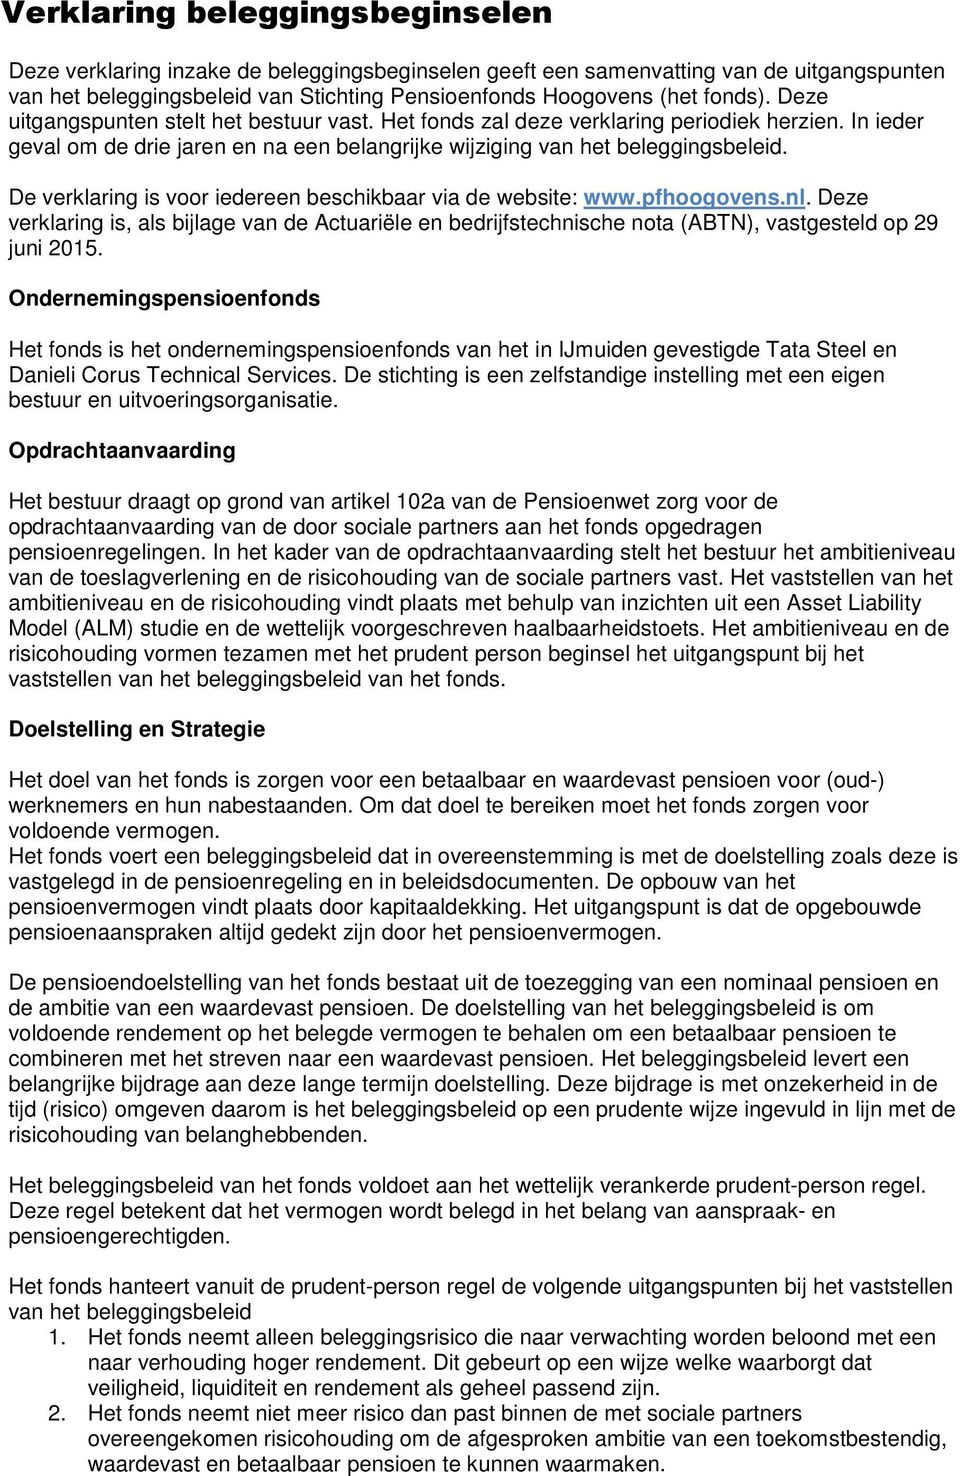 De verklaring is voor iedereen beschikbaar via de website: www.pfhoogovens.nl. Deze verklaring is, als bijlage van de Actuariële en bedrijfstechnische nota (ABTN), vastgesteld op 29 juni 2015.